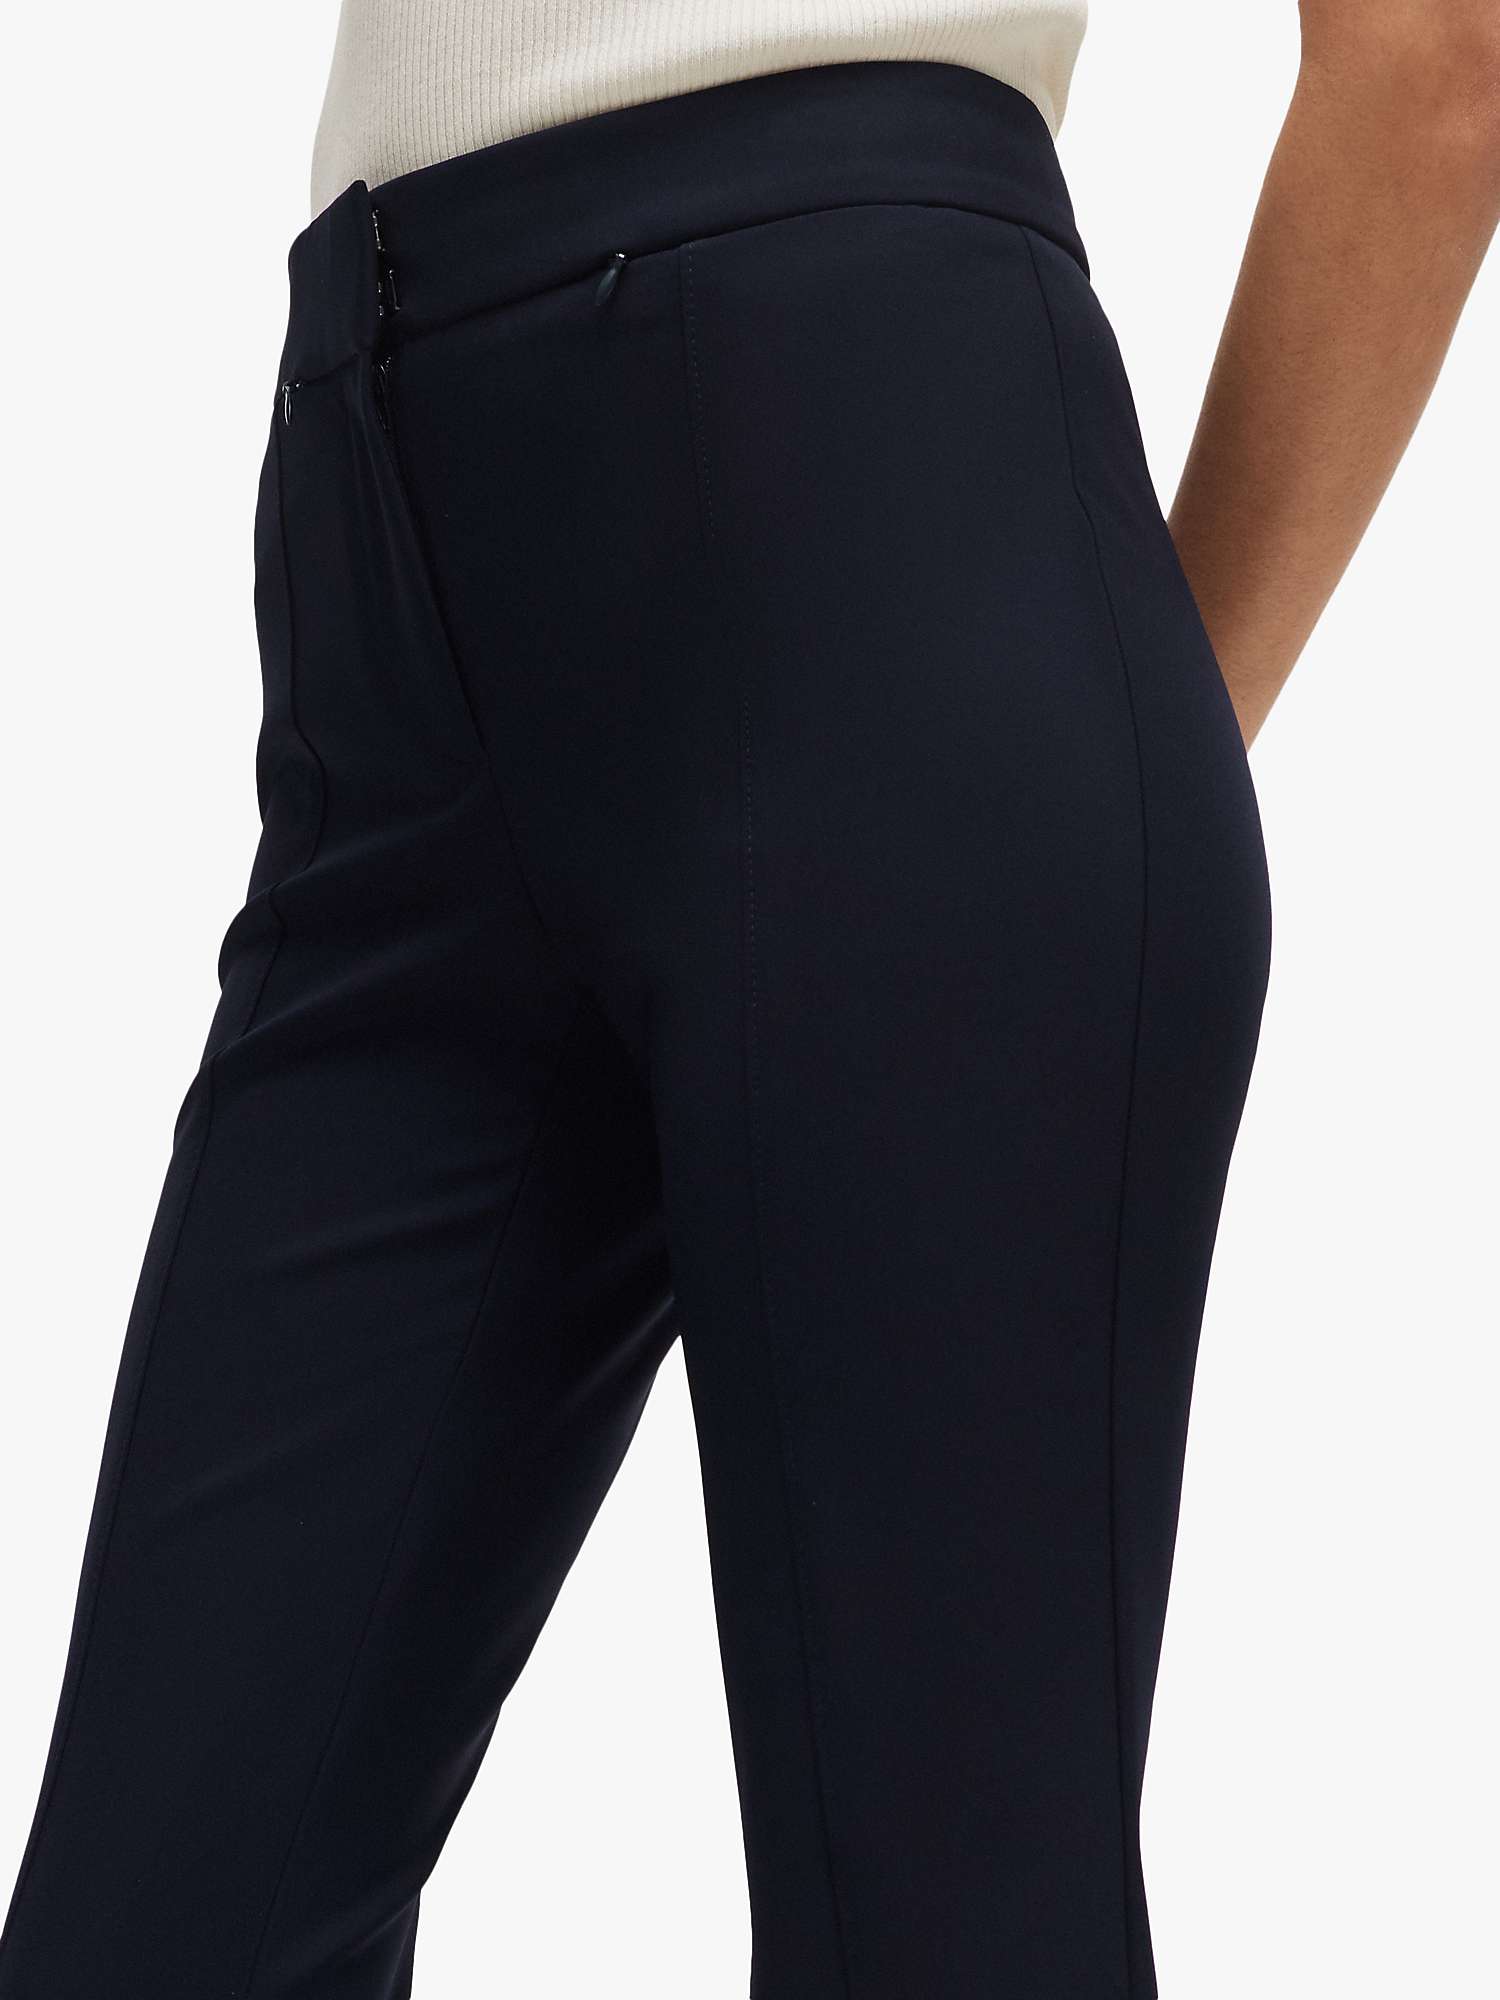 Buy BOSS Tukeva Zip Hem Slim Leg Trousers, Navy Online at johnlewis.com